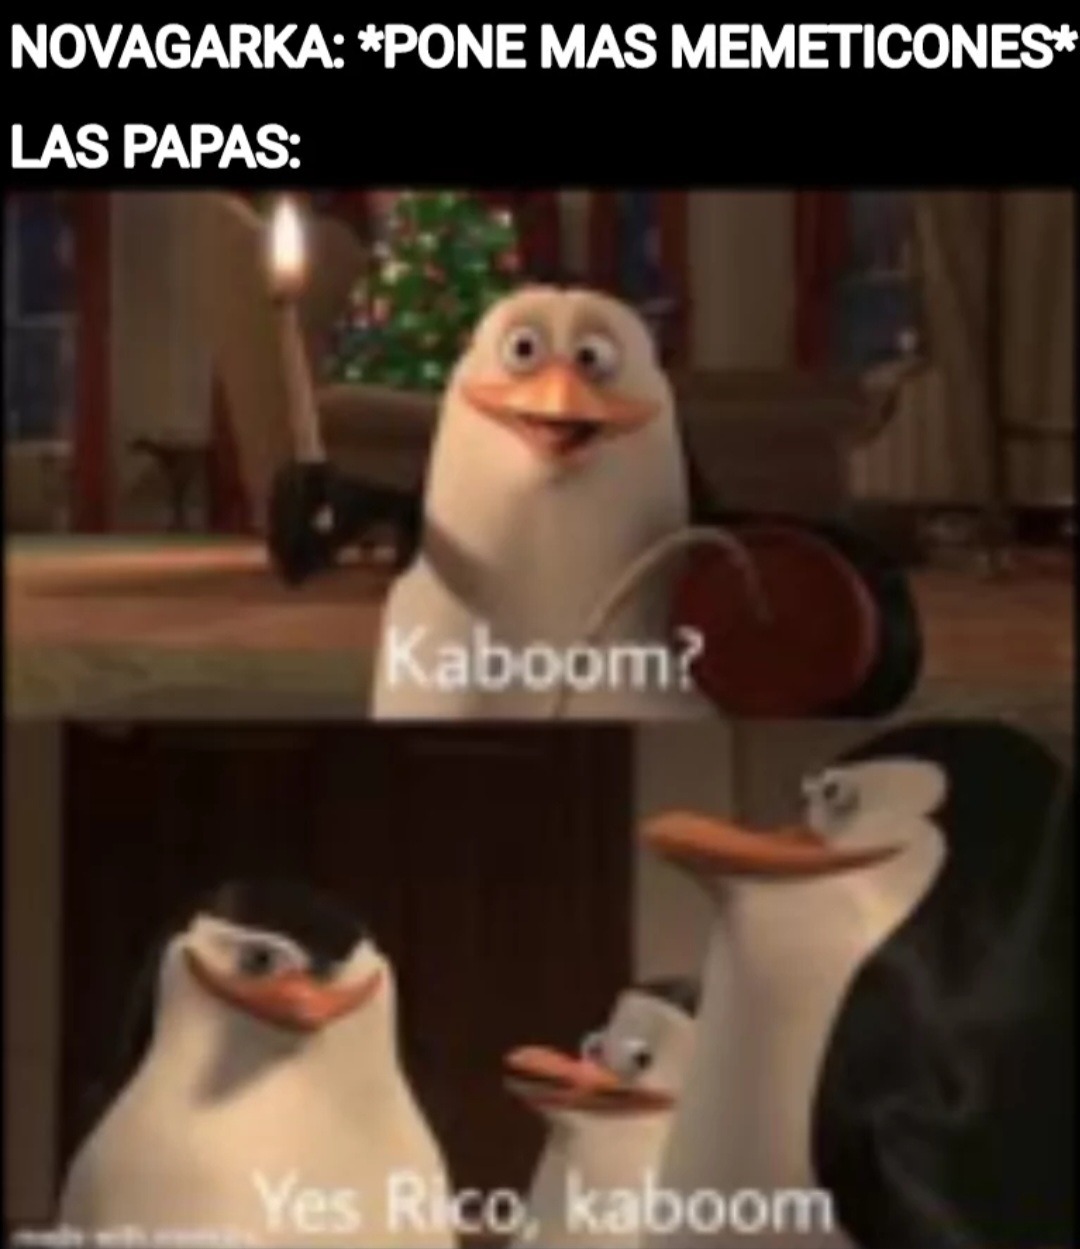 When papas + explosiones - meme